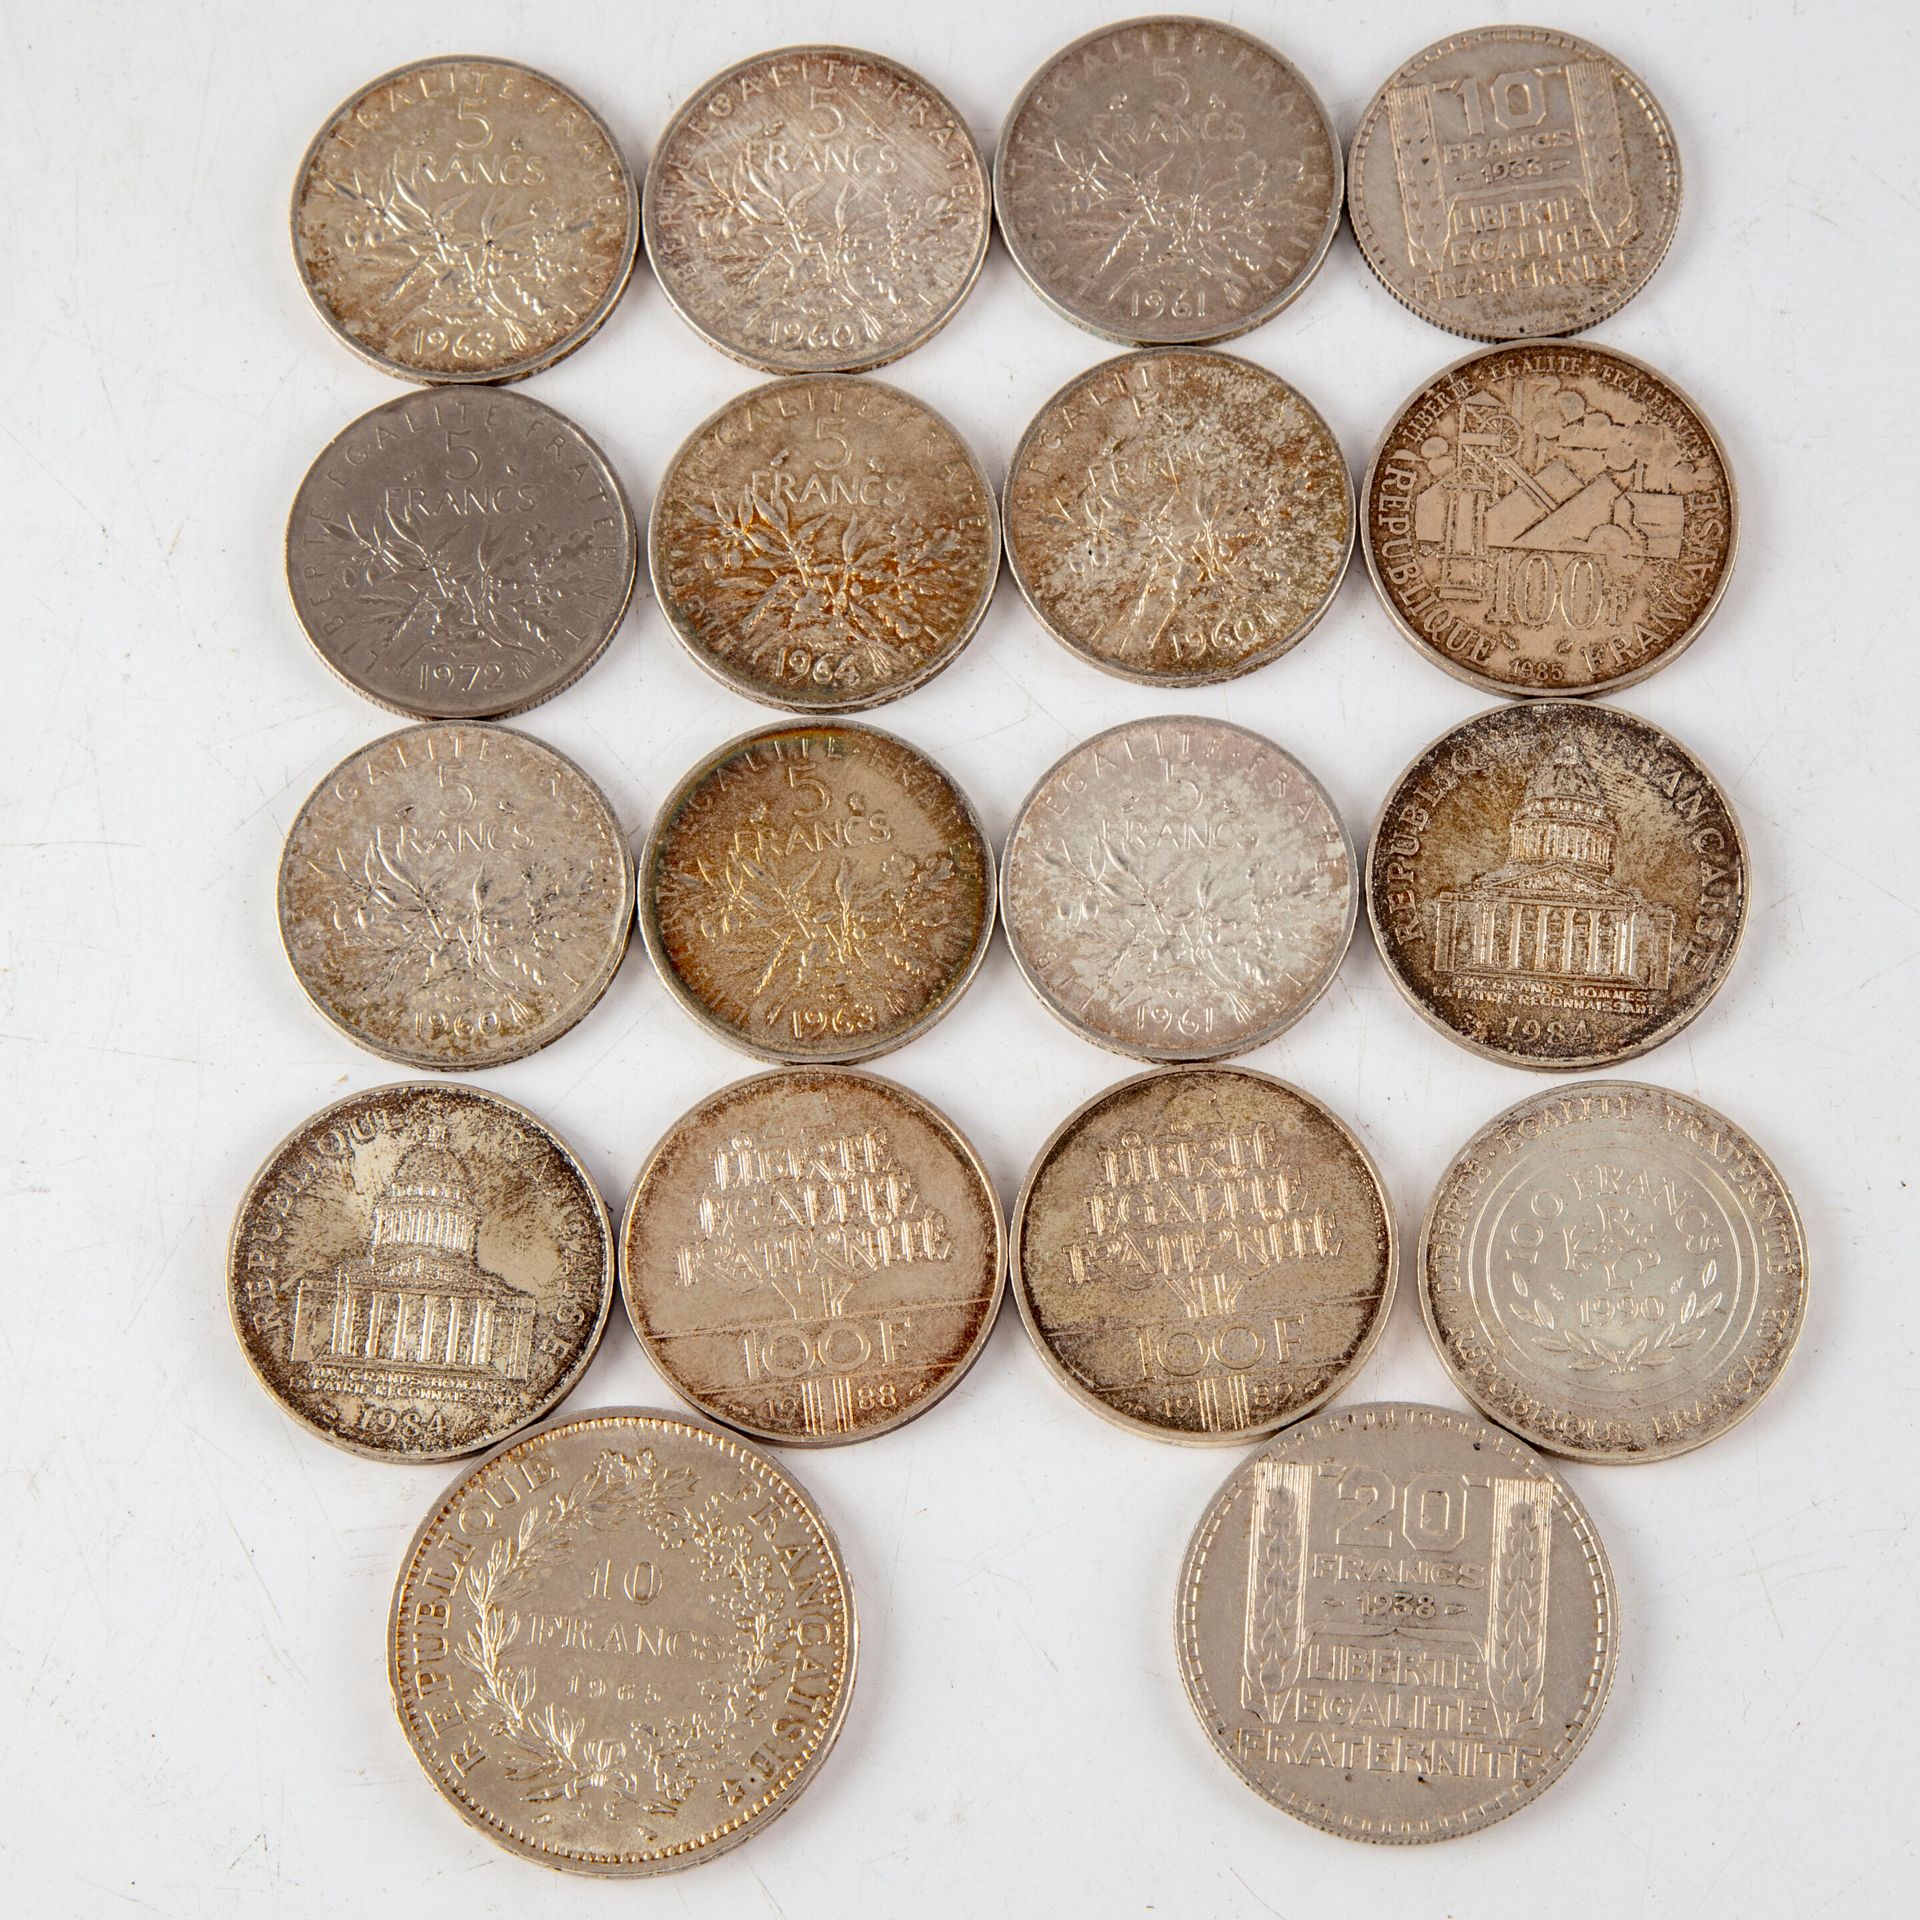 Null 银币套装包括:

- 1枚20法郎的都灵硬币，1938年

- 1枚10法郎硬币，都灵，1933年

- 1965年1枚10法郎硬币

- 9枚5法郎&hellip;